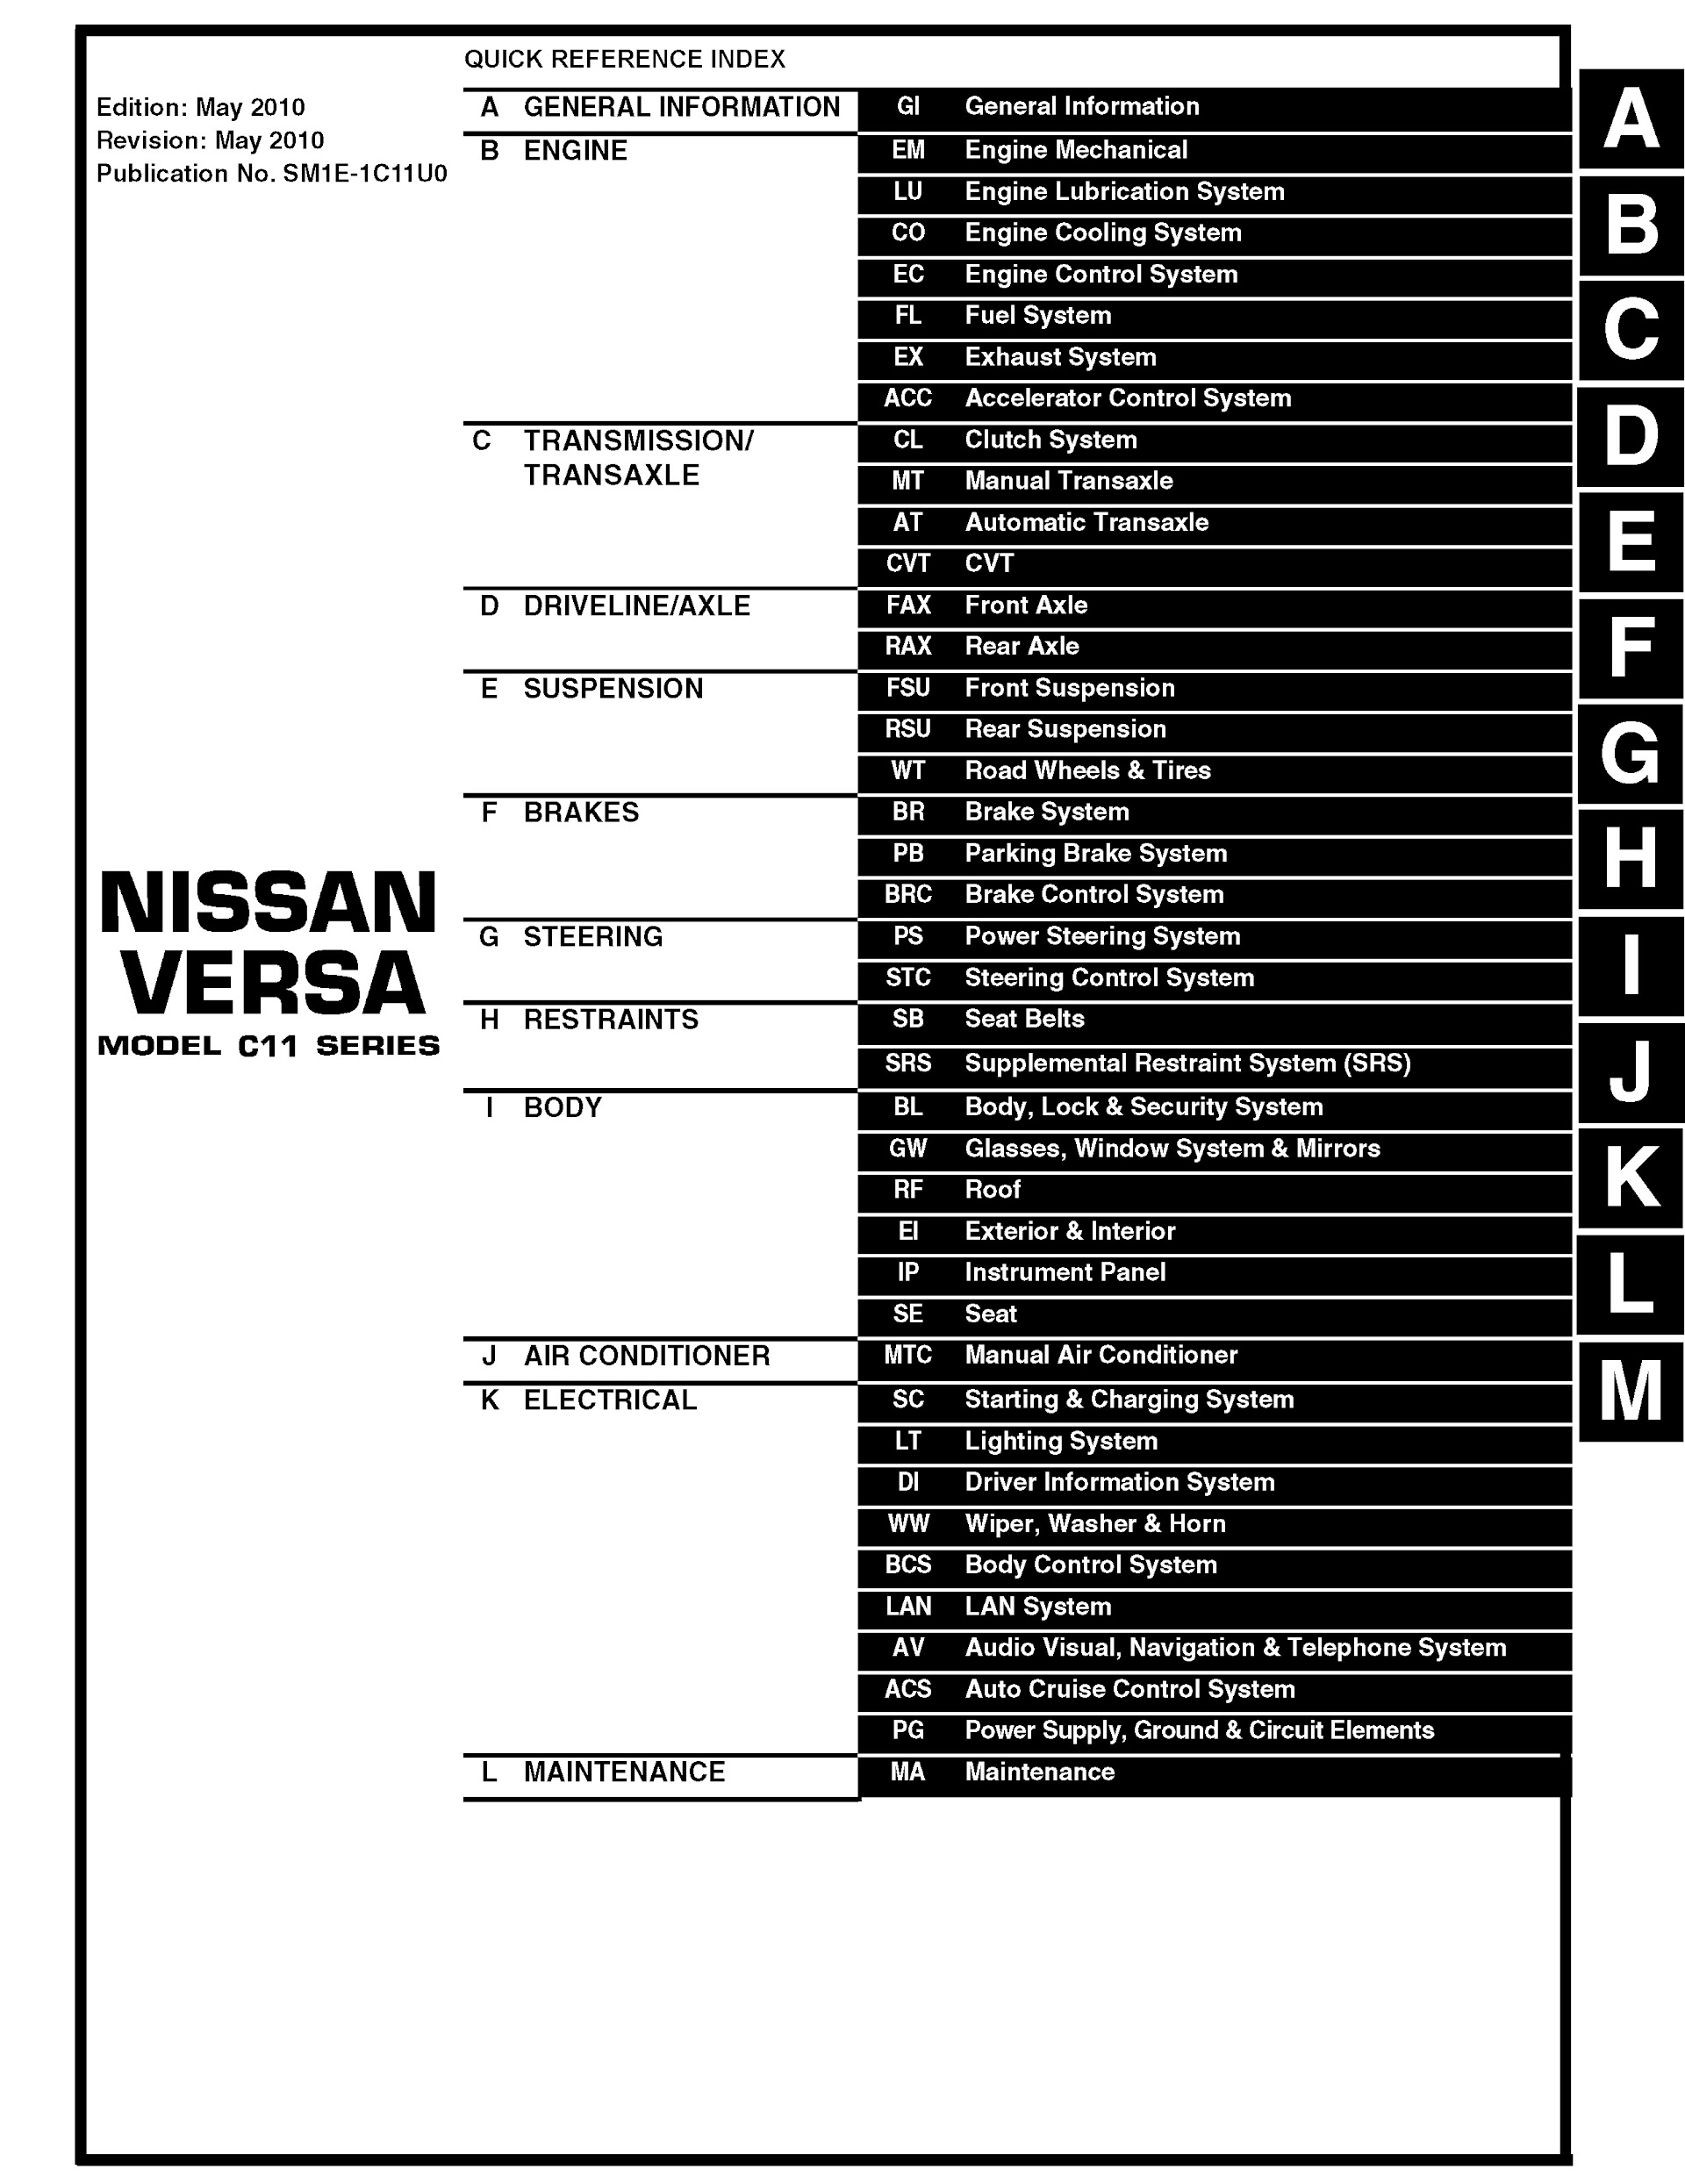 Table of Contents 2011 Nissan Versa Repair Manual